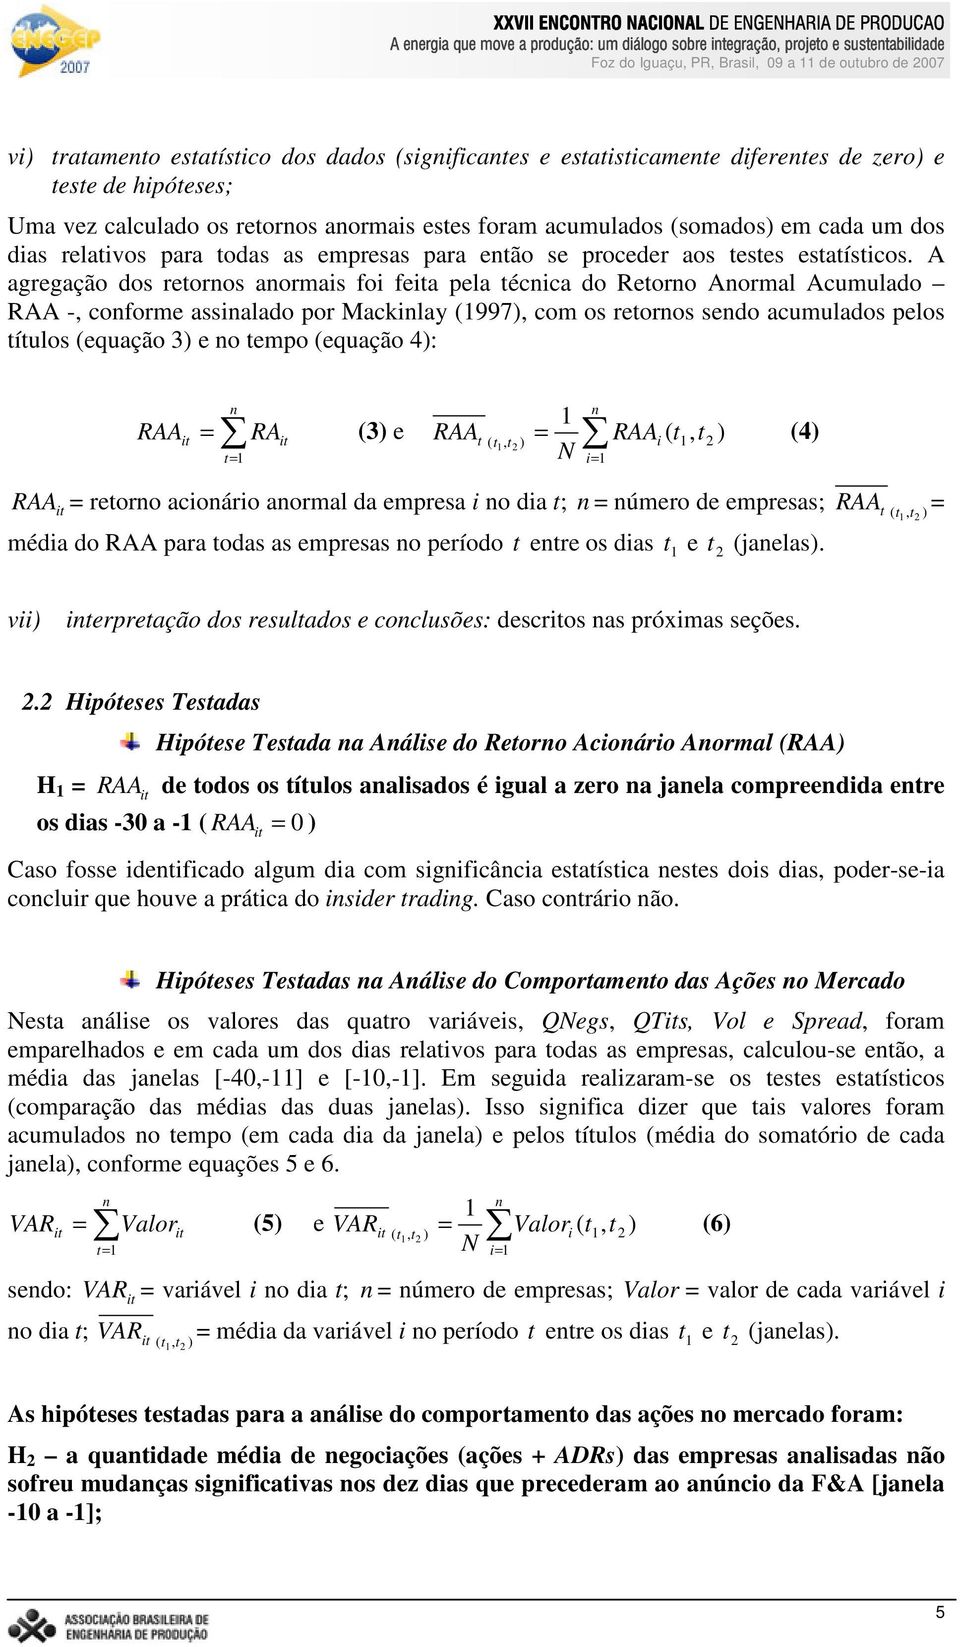 A agregação dos retornos anormais foi fea pela técnica do Retorno Anormal Acumulado RAA -, conforme assinalado por Mackinlay (997), com os retornos sendo acumulados pelos títulos (equação 3) e no